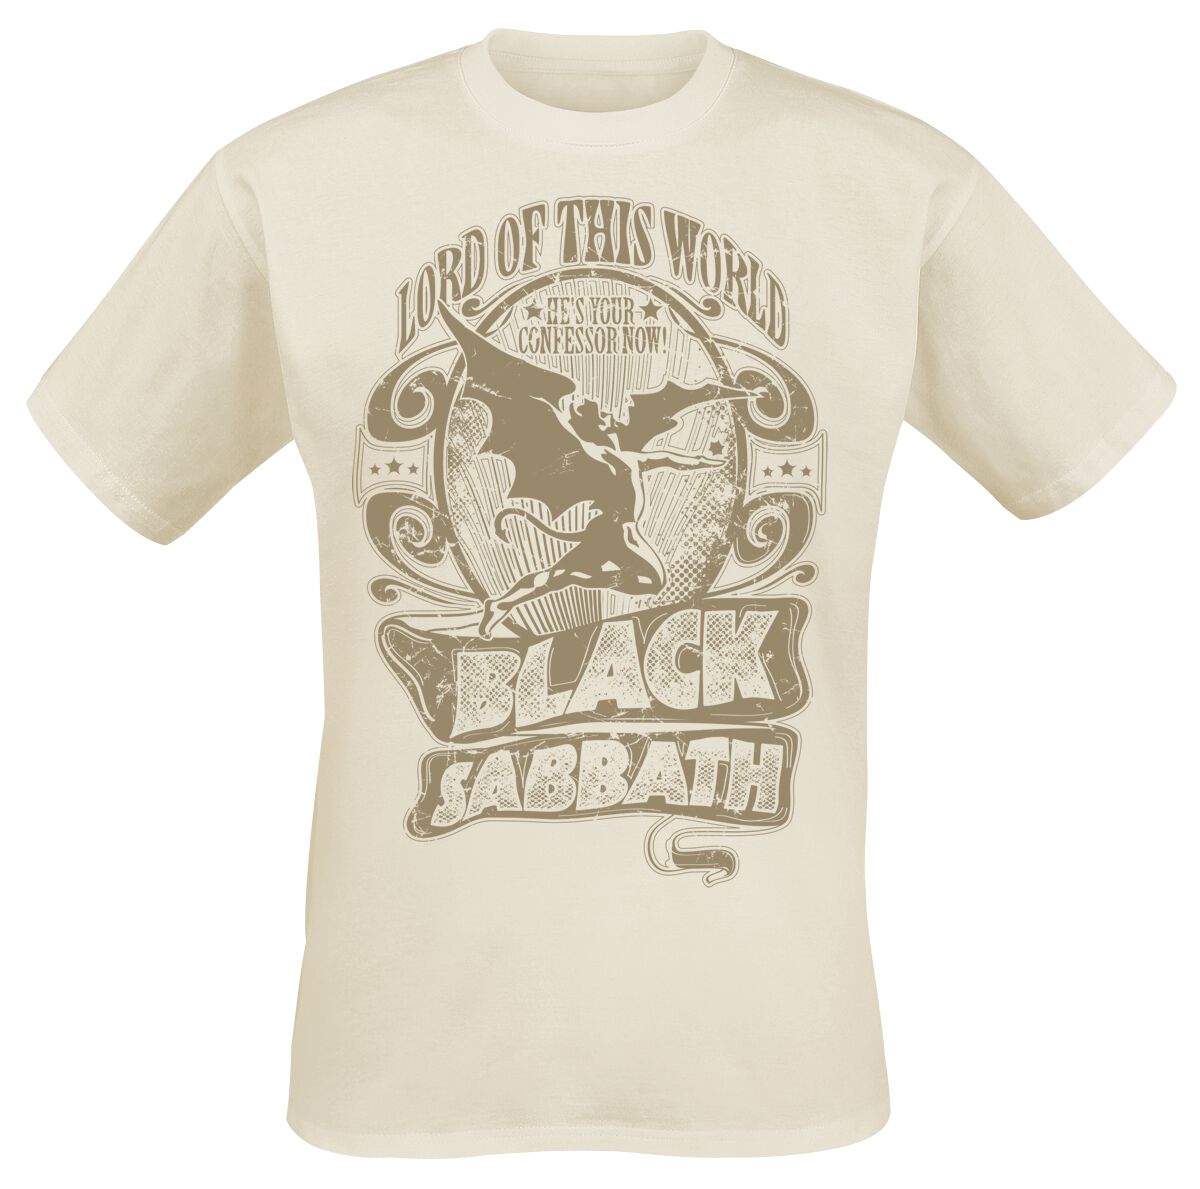 Black Sabbath T-Shirt - Lord Of This World - L bis XXL - für Männer - Größe L - natur  - Lizenziertes Merchandise!